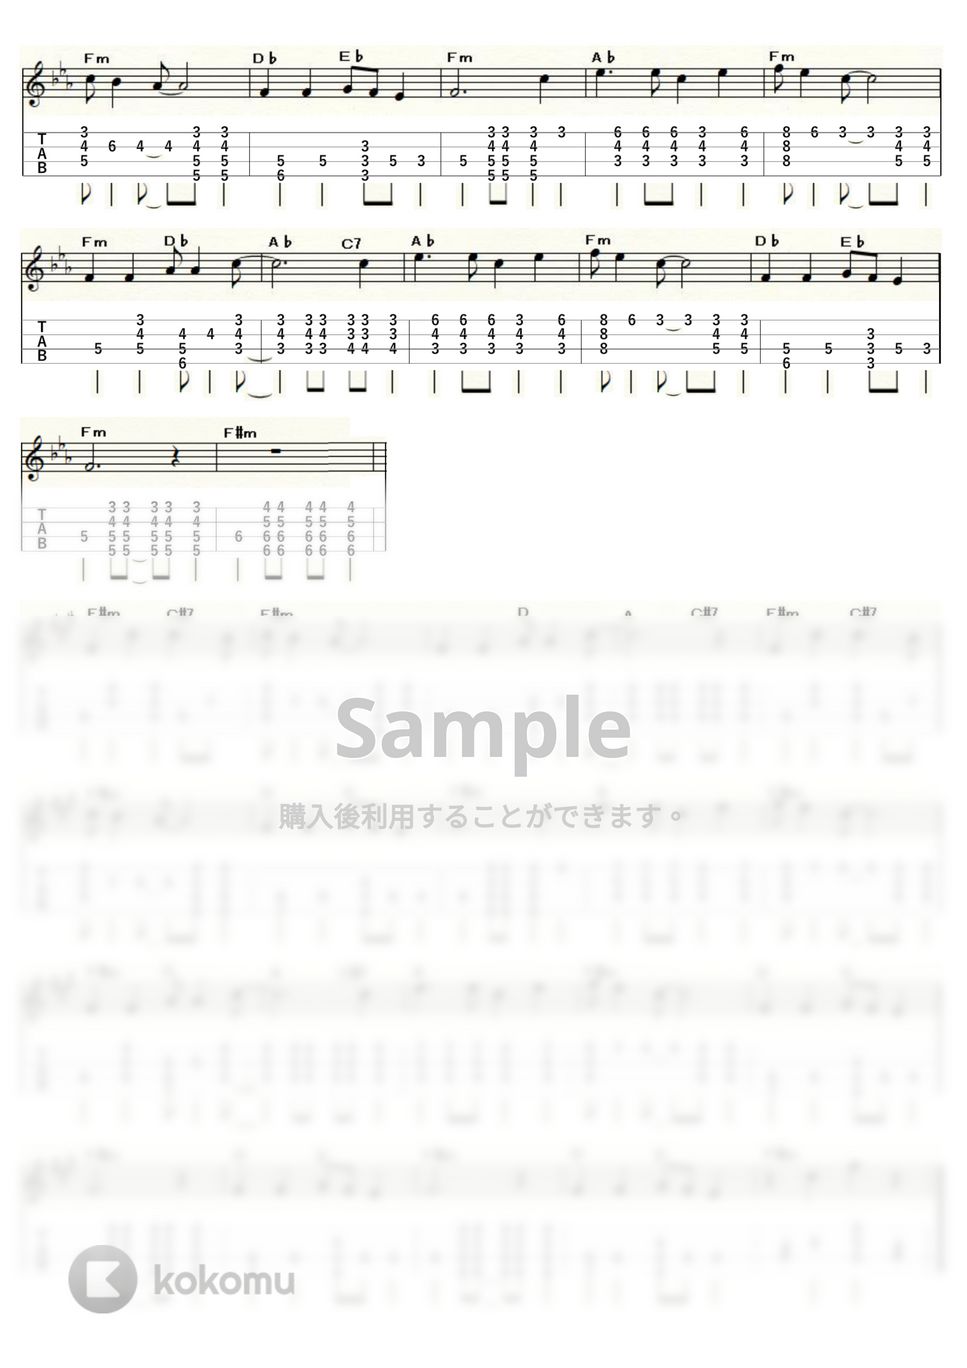 ヴィレッジ・ストンパーズ - ワシントン広場の夜はふけて (ｳｸﾚﾚｿﾛ / High-G・Low-G / 中級) by ukulelepapa